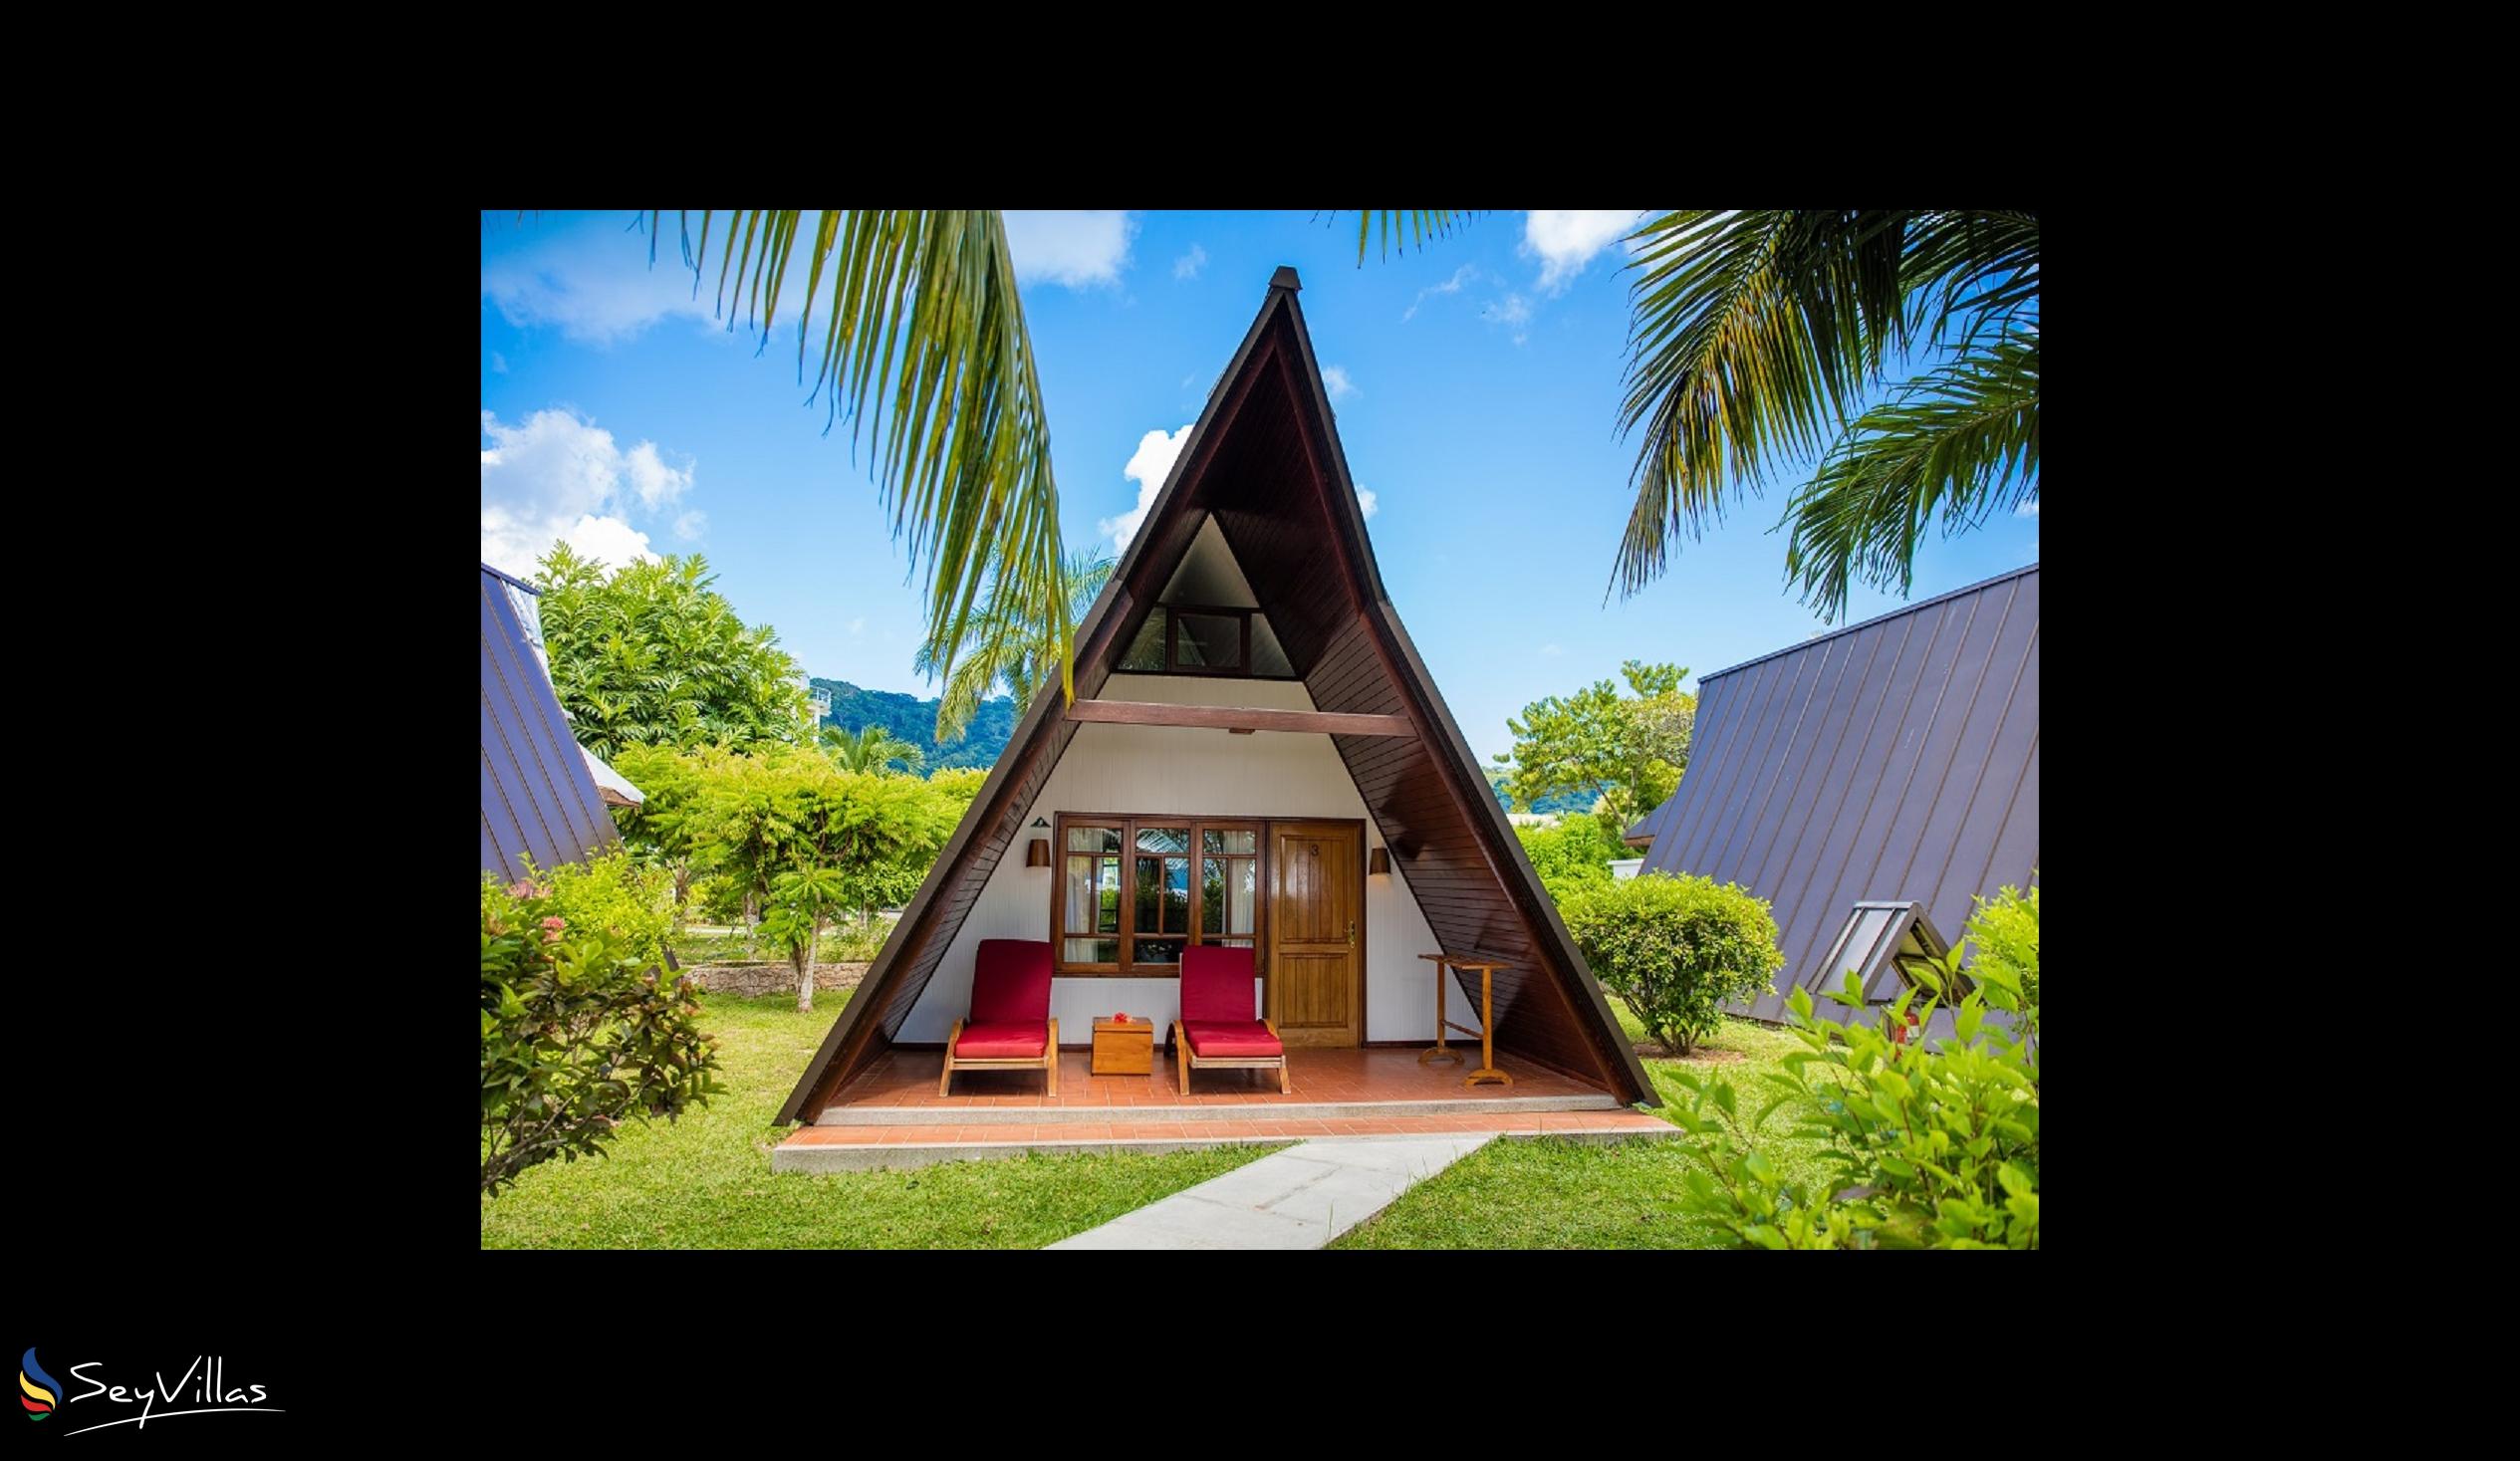 Photo 44: La Digue Island Lodge - Garden Chalet - La Digue (Seychelles)